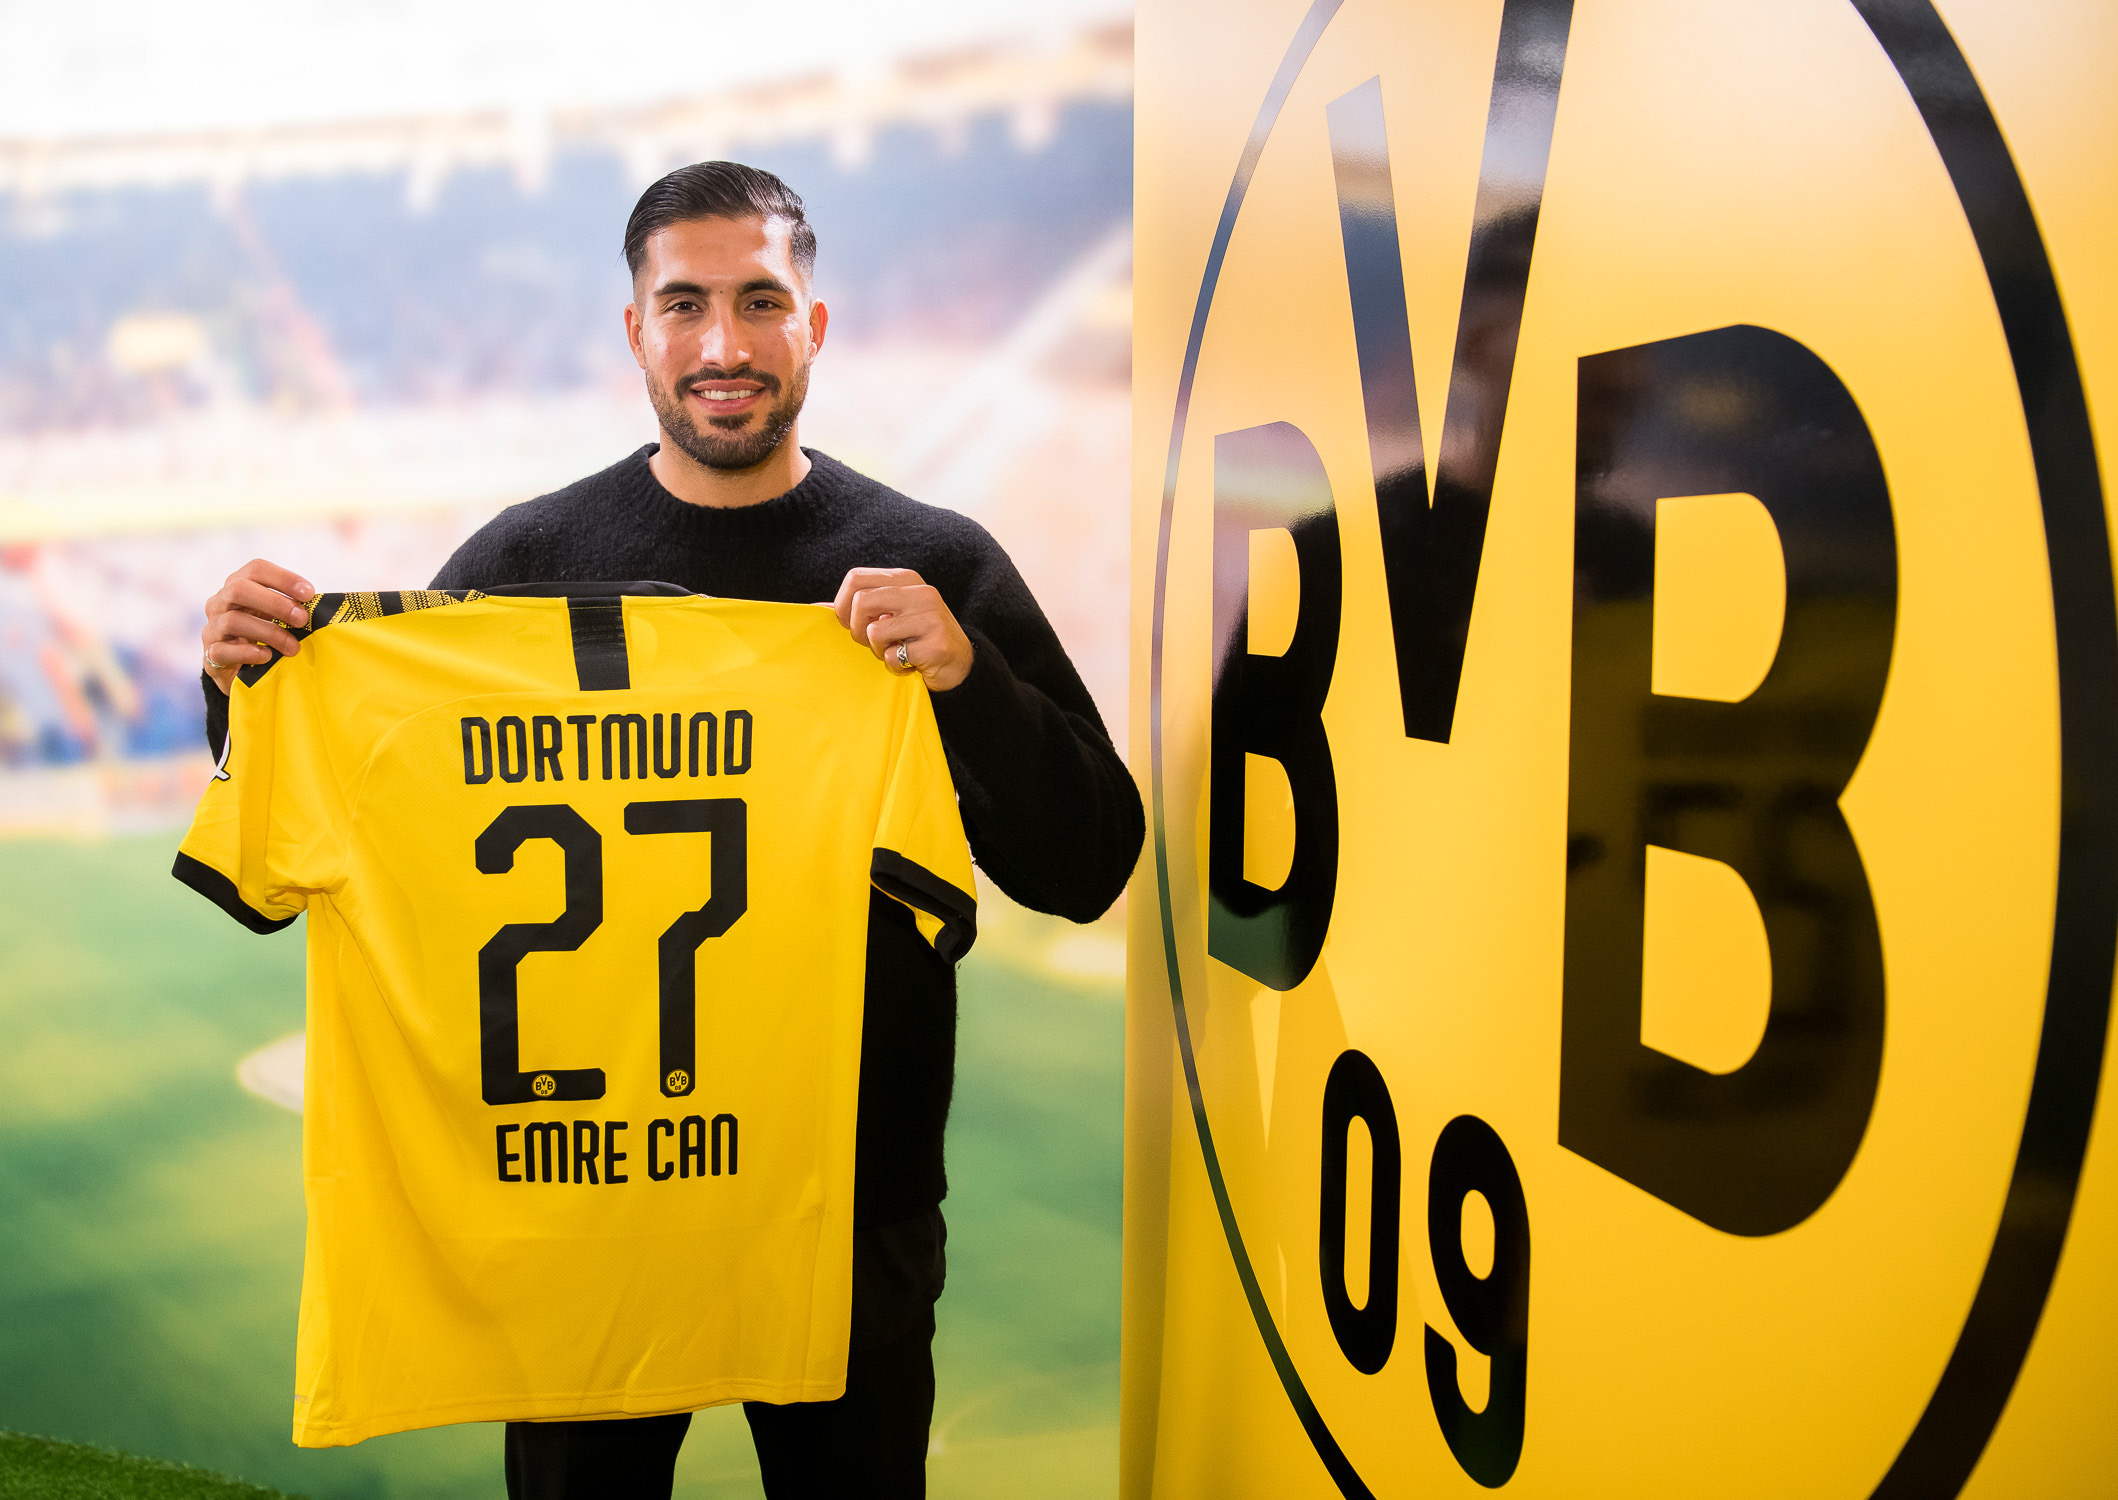 EMRE CAN - Três jogos foram suficientes para convencer o Borussia Dortmund a adquiri-lo em definitivo à Juventus. O volante chegou ao clube alemão no início deste ano, por empréstimo. O custo da negociação foi de 25 milhões de euros. Cerca de R$ 151 milhões.